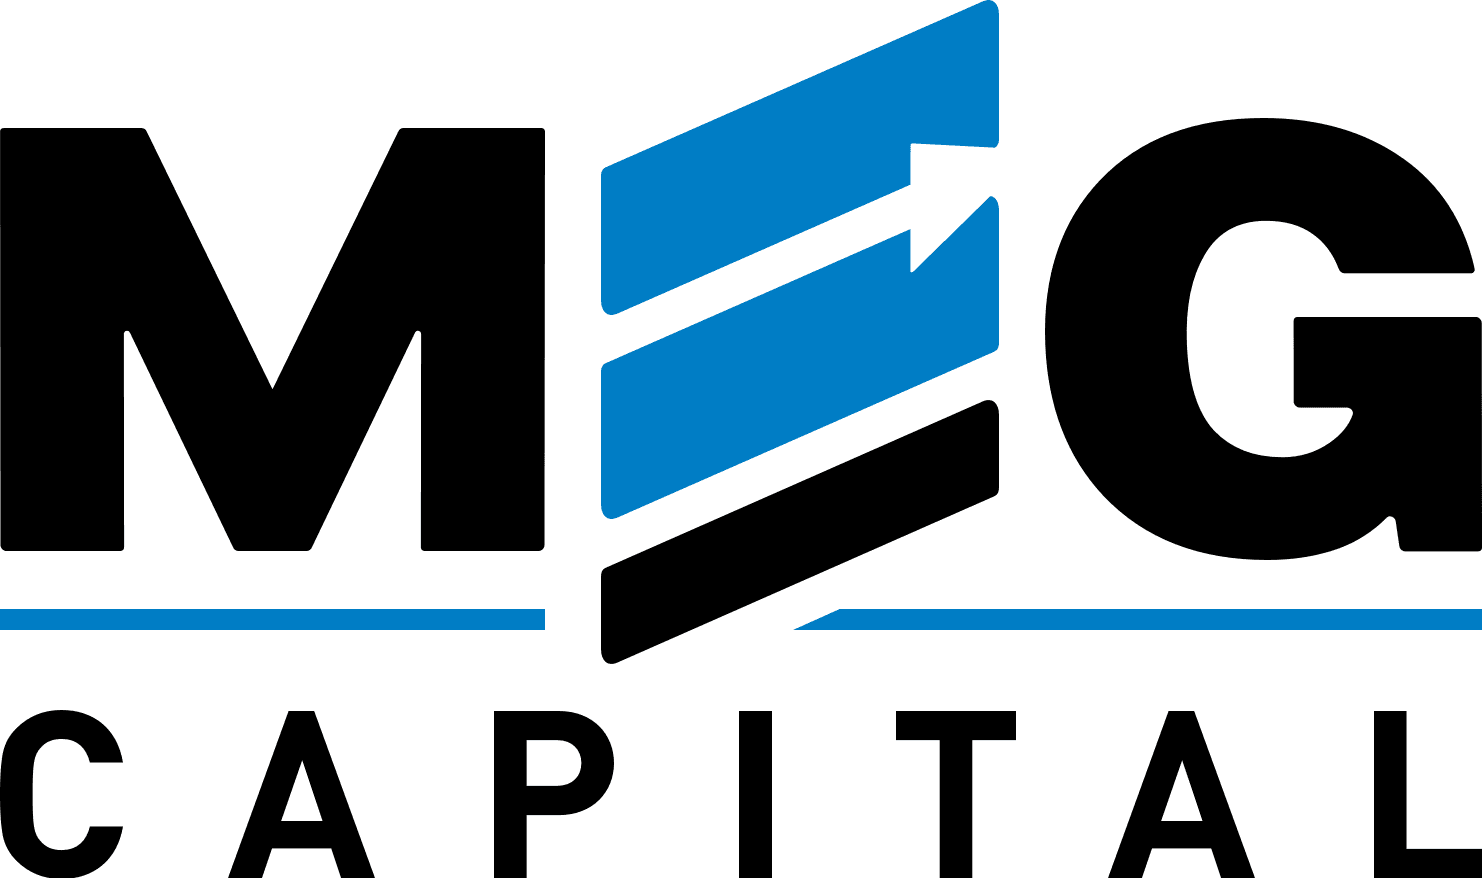 MEG Capital